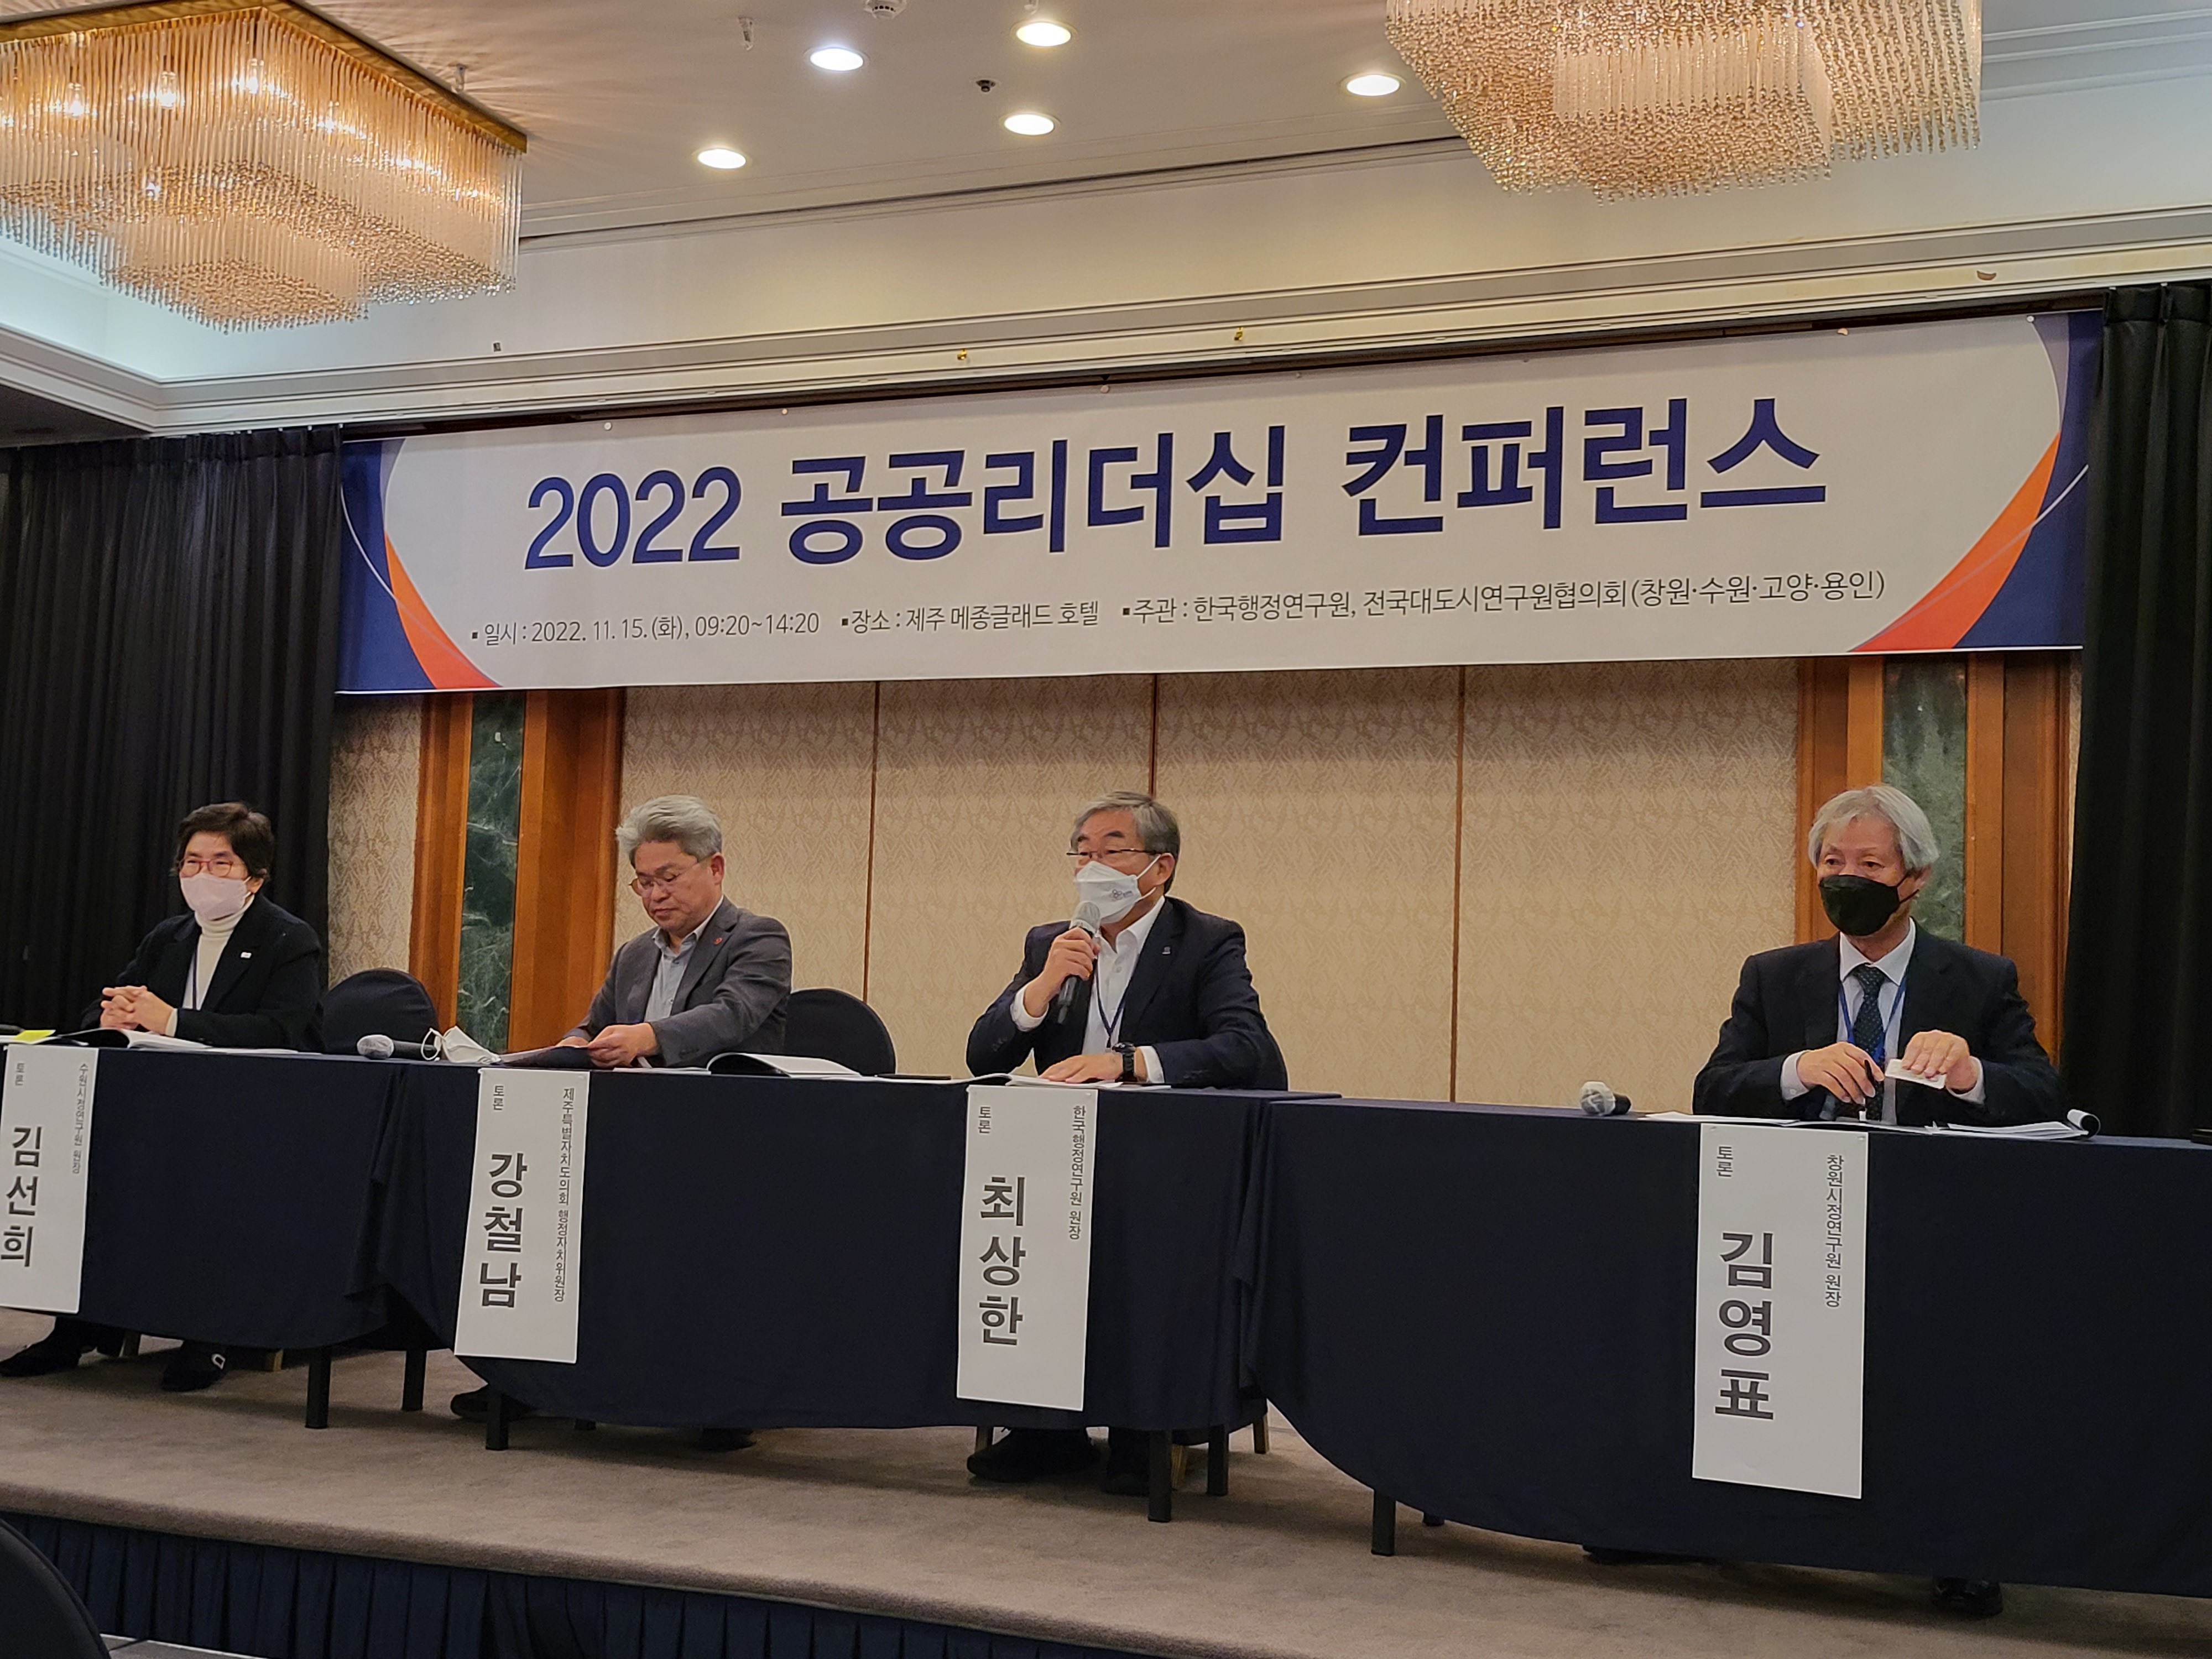 한국행정연구원이 주최한 ‘2022 공공리더십 컨퍼런스’가 15일 제주 메종글래드 호텔에서 진행되고 있다.